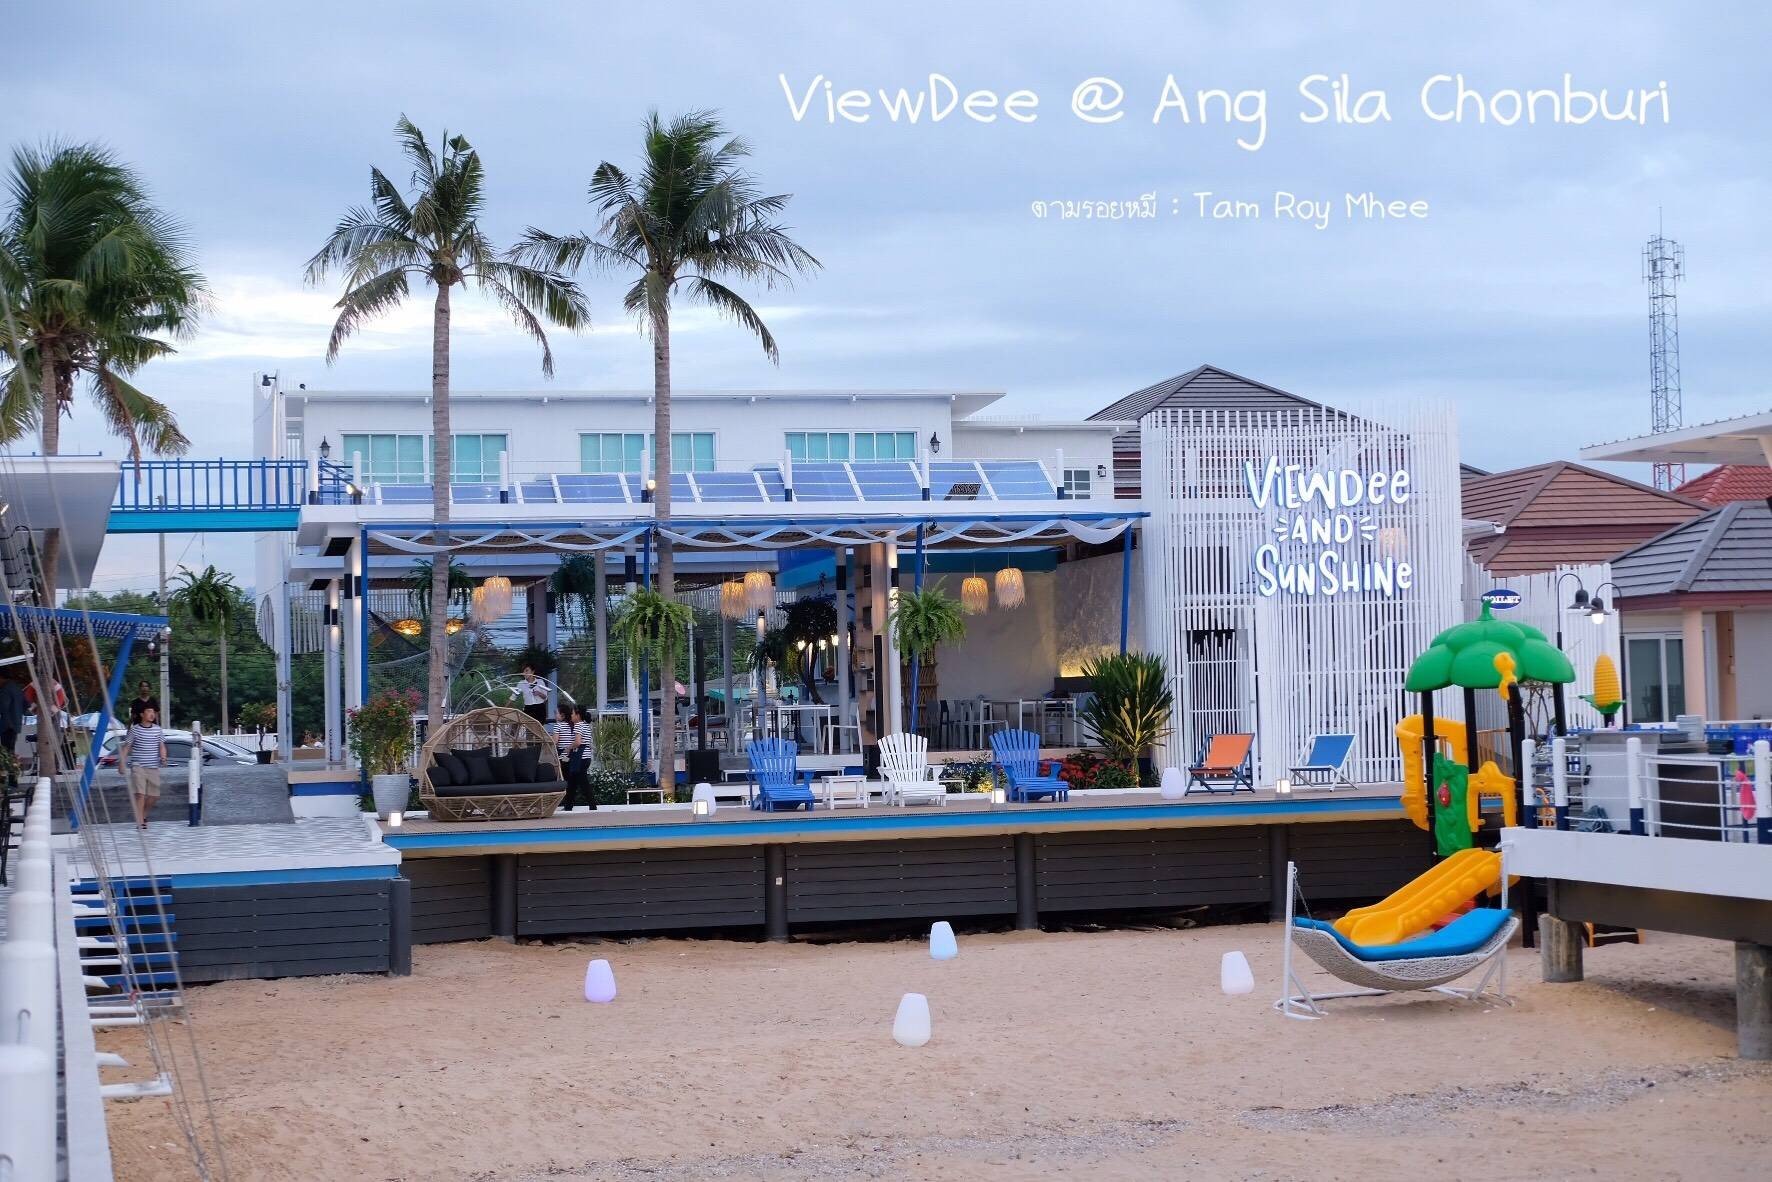 รีวิว Viewdee Relax & Restaurant อ่างศิลา อ่างศิลา - ร้านโปรดมาเปิดที่ชลบุรีแล้ว  - Wongnai